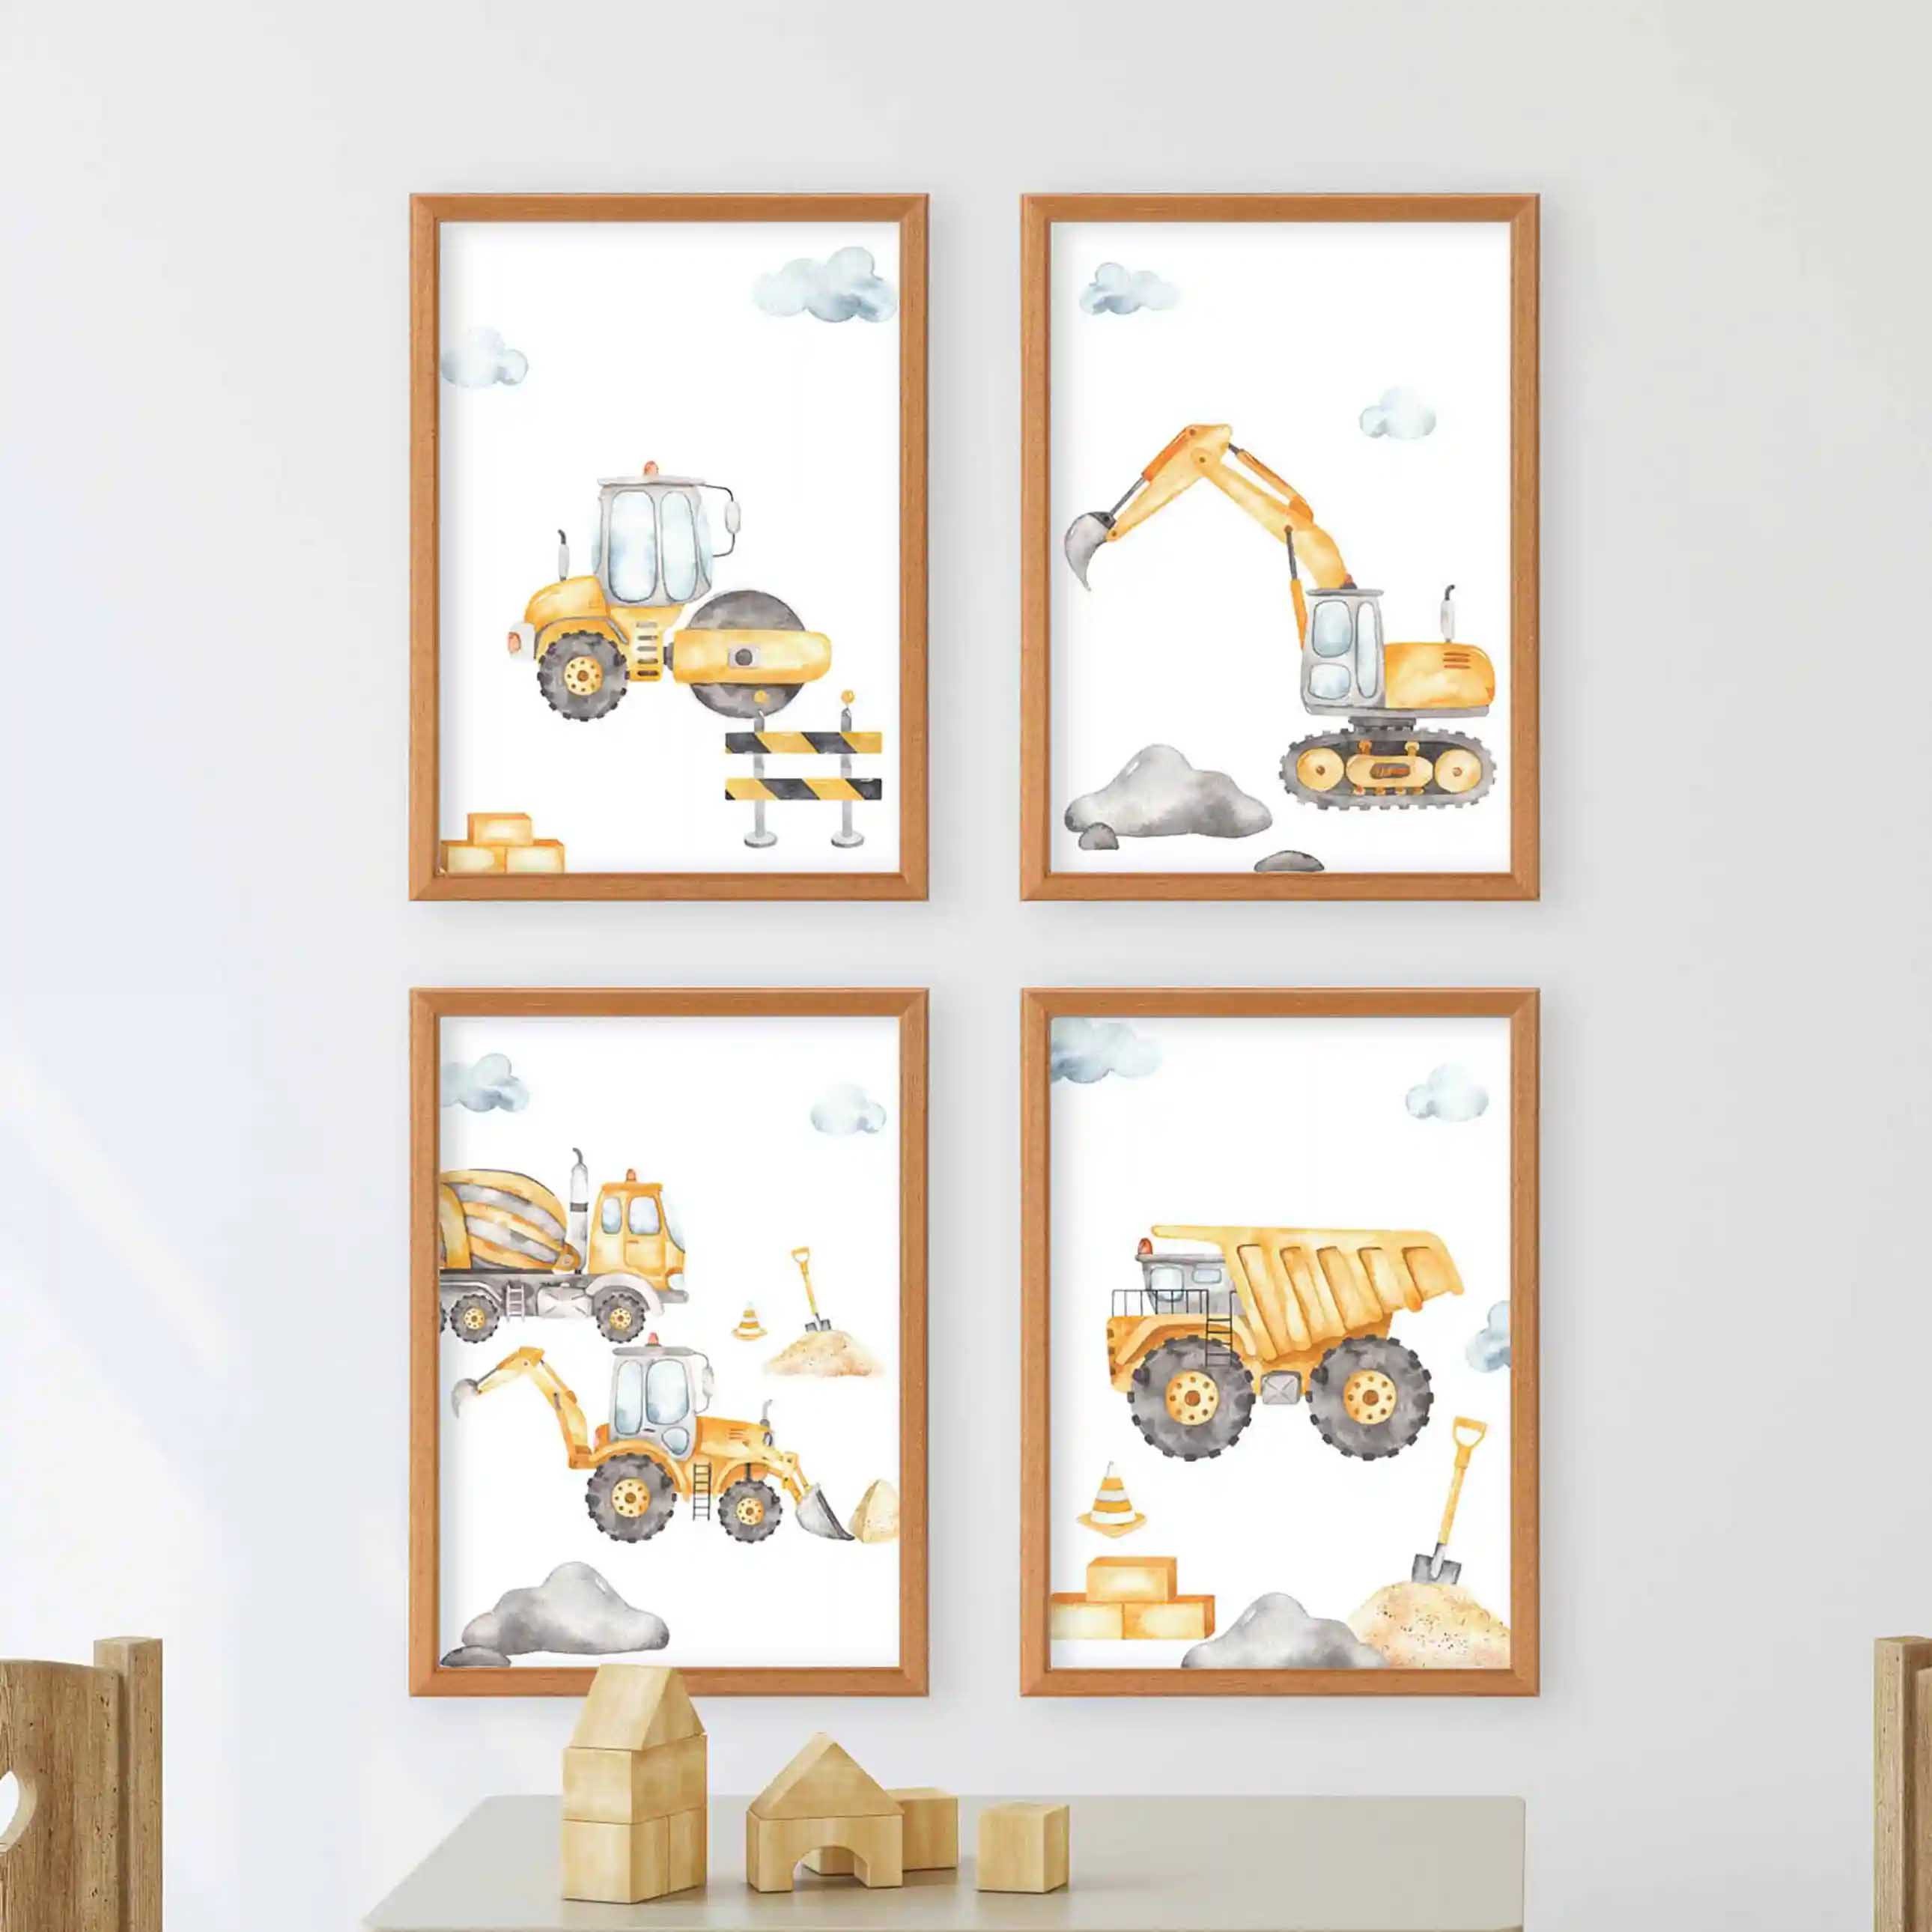 WANDKIND Poster Kinderzimmer Poster 4er Set Premium P757 / Baustelle, Wandposter in verschiedenen Größen